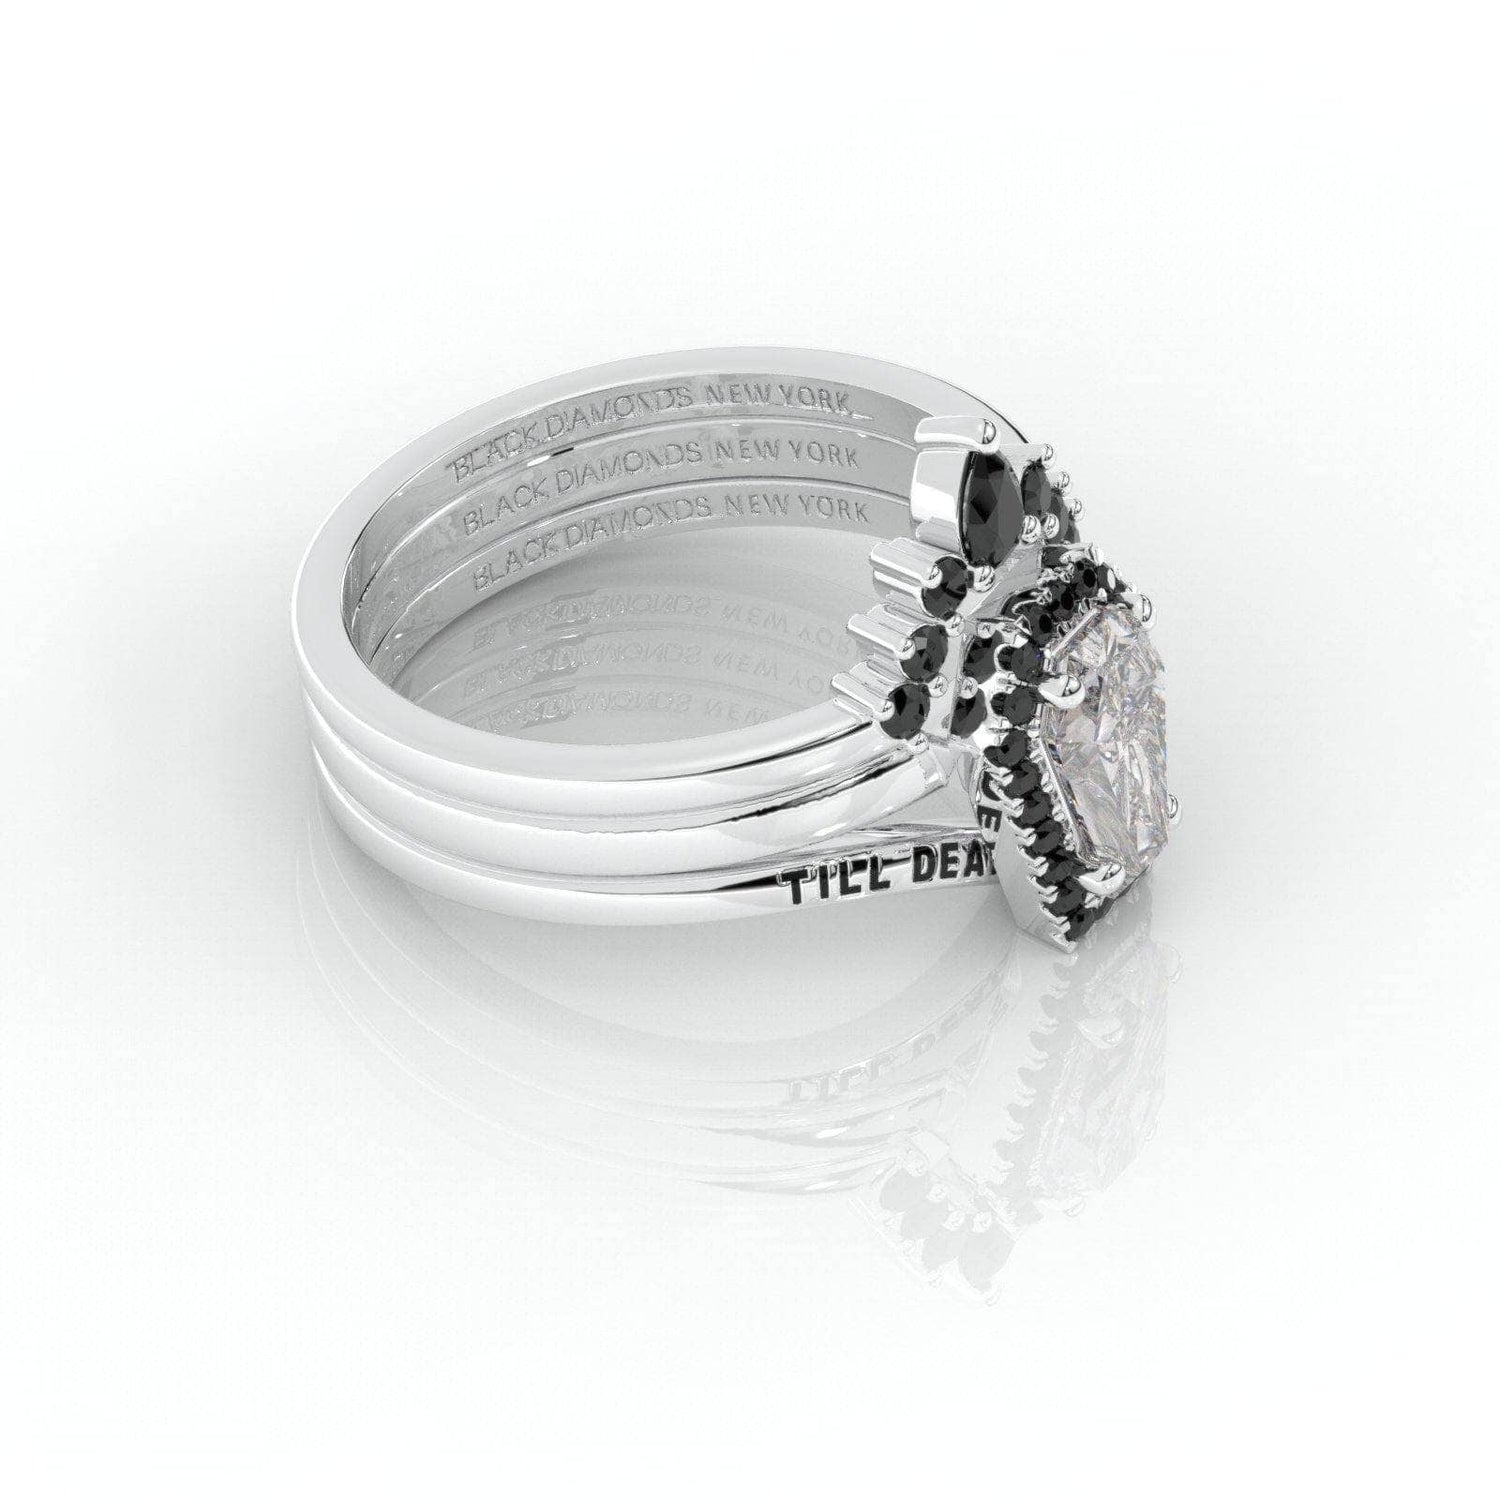 Till Death Do Us Part Rings- Rare Coffin Cut Moissanite 14k White Gold Ring Set - Black Diamonds New York